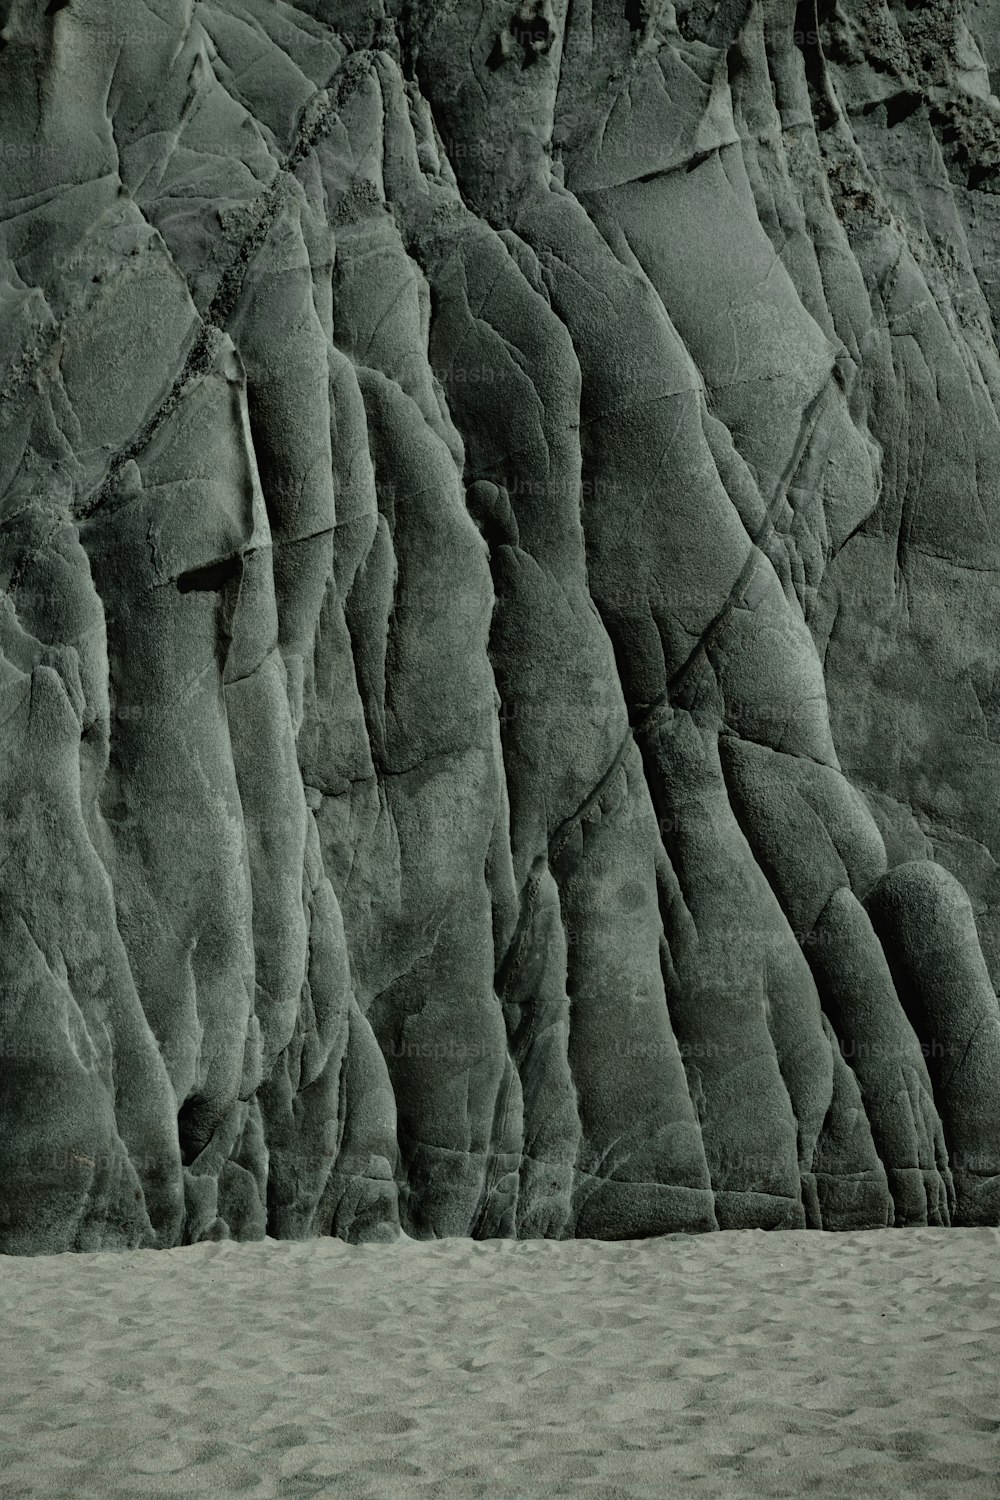 Una foto en blanco y negro de una pared rocosa